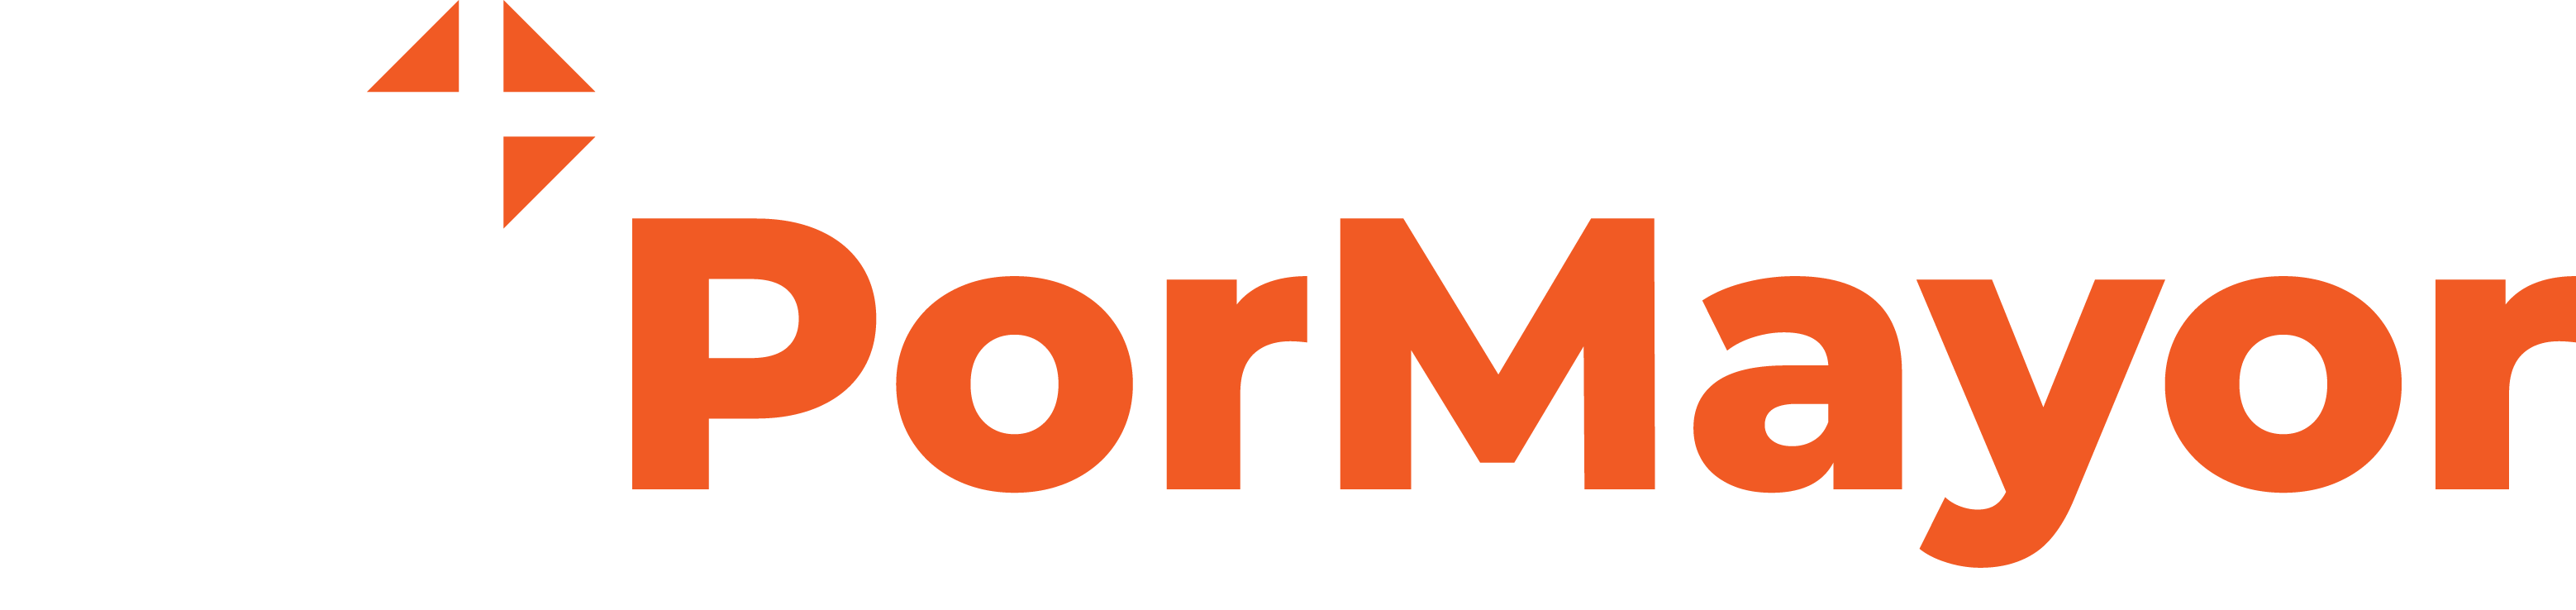 www.xpormayor.com.mx